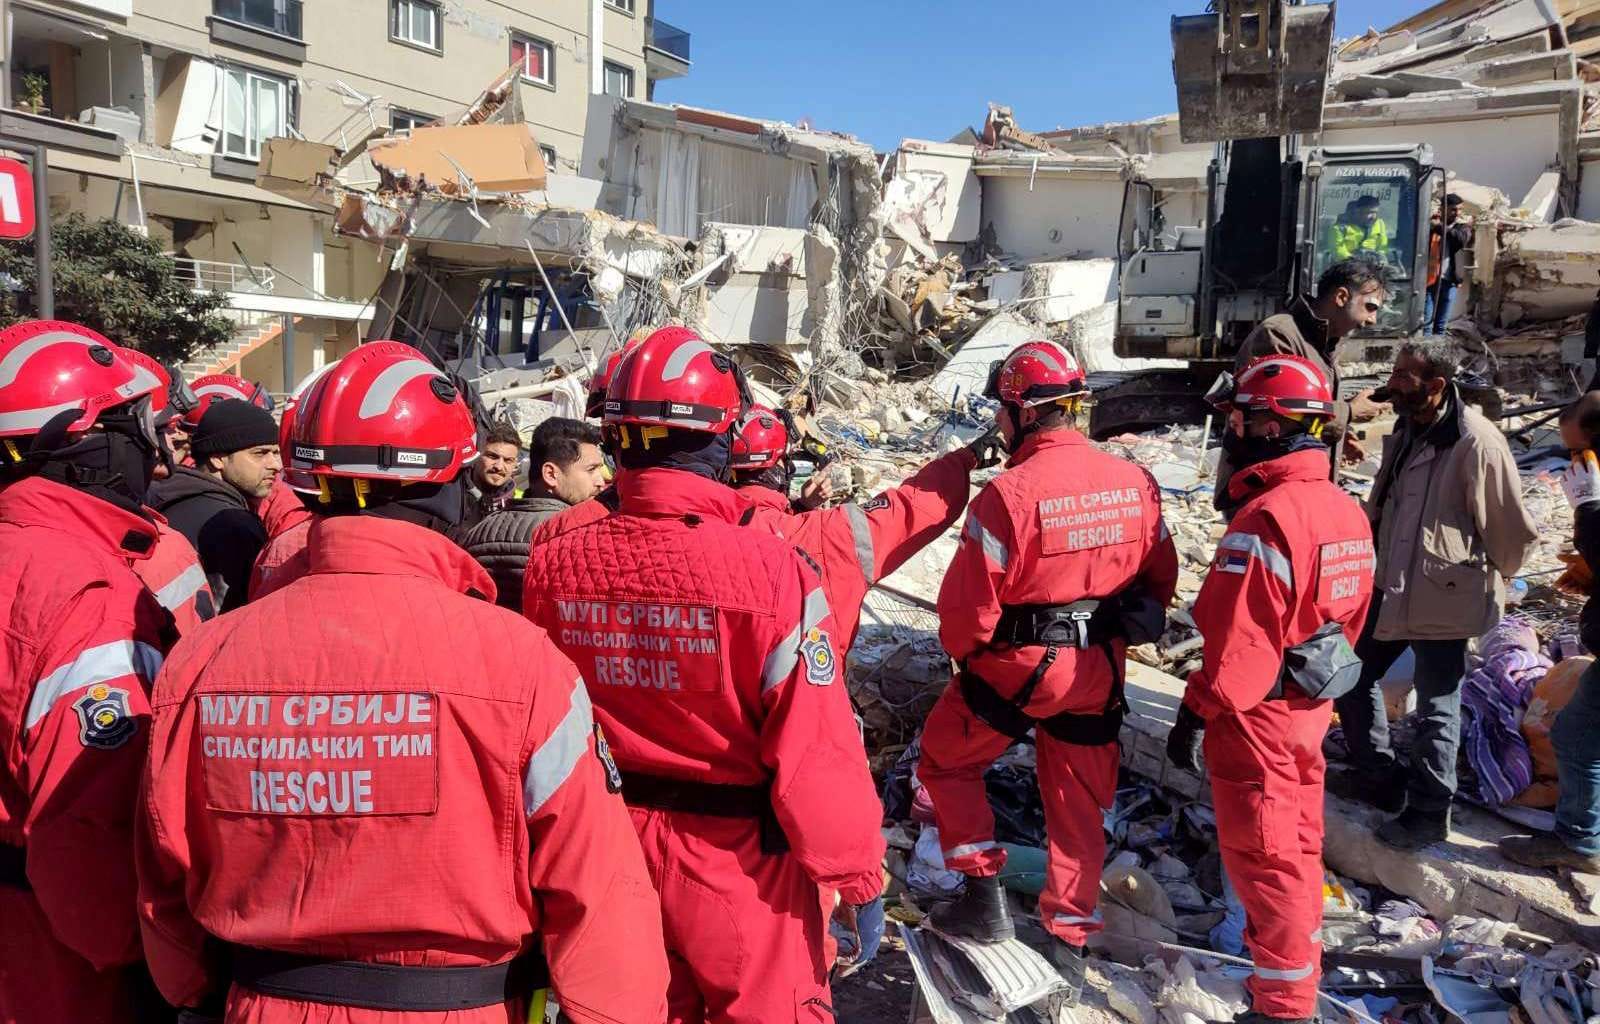  Žena spasena nakon 100 sati pod ruševinama u Turskoj 